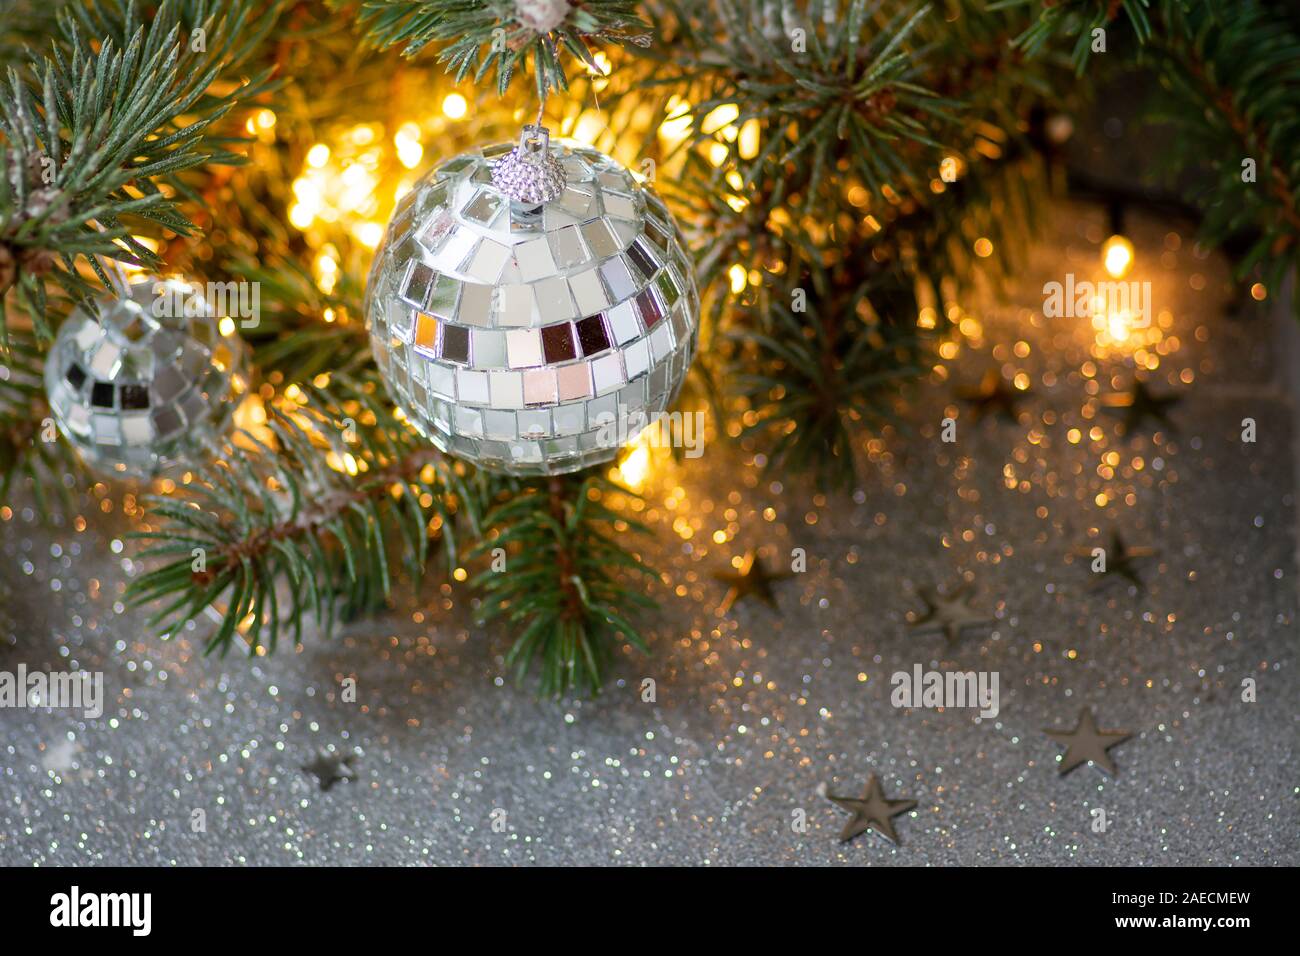 Arbre de Noël avec des ornements brillants et festive background Banque D'Images